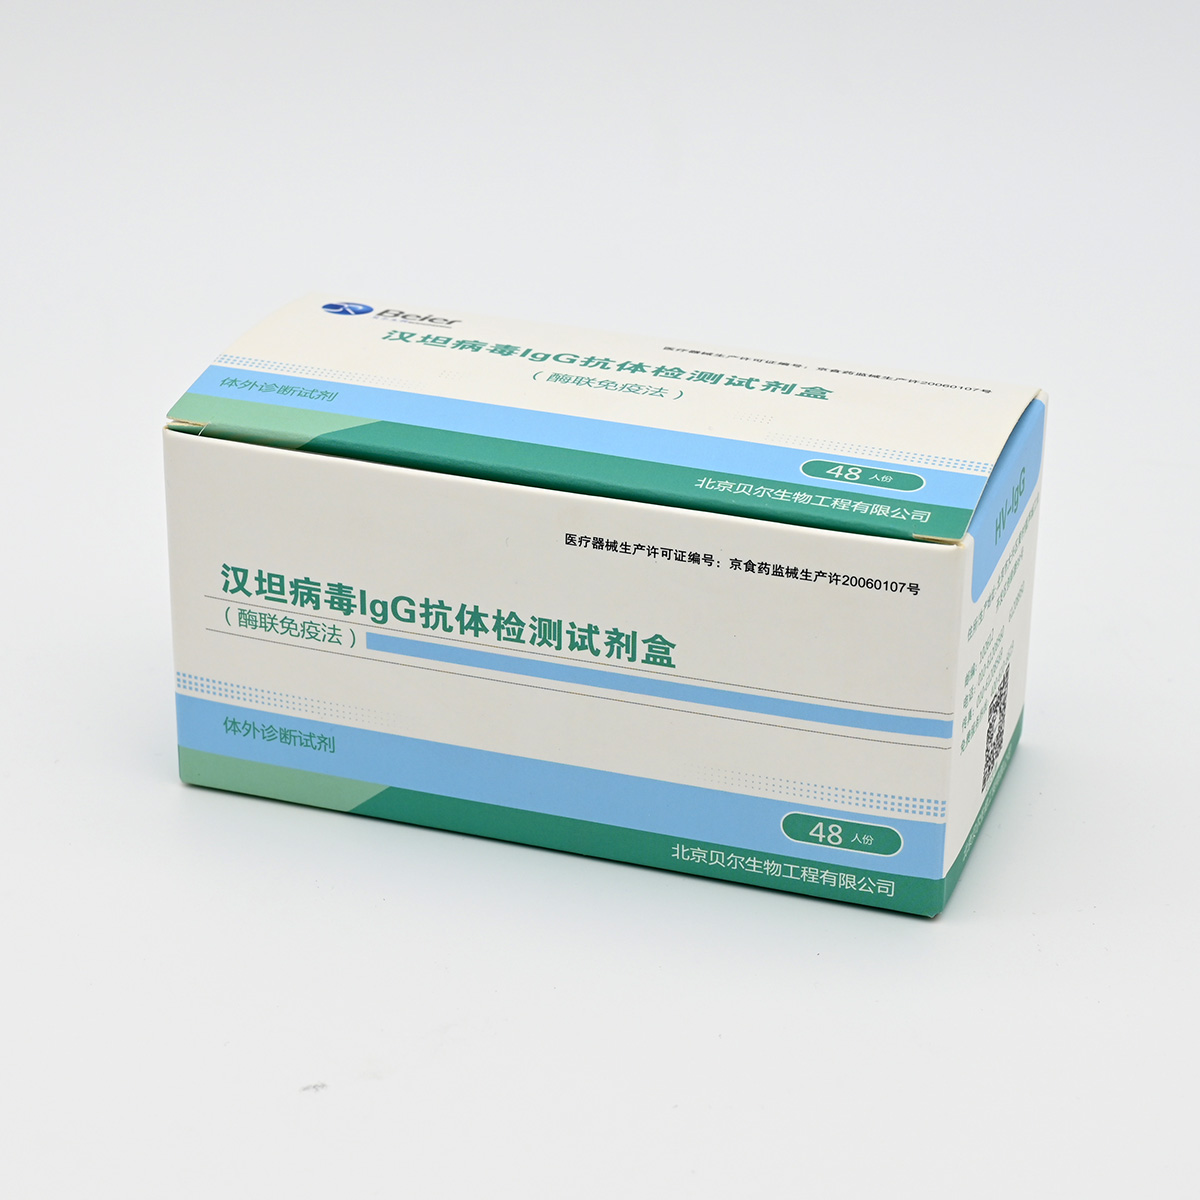 【贝尔】汉坦病毒IgG抗体检测试剂盒(酶联免疫法)